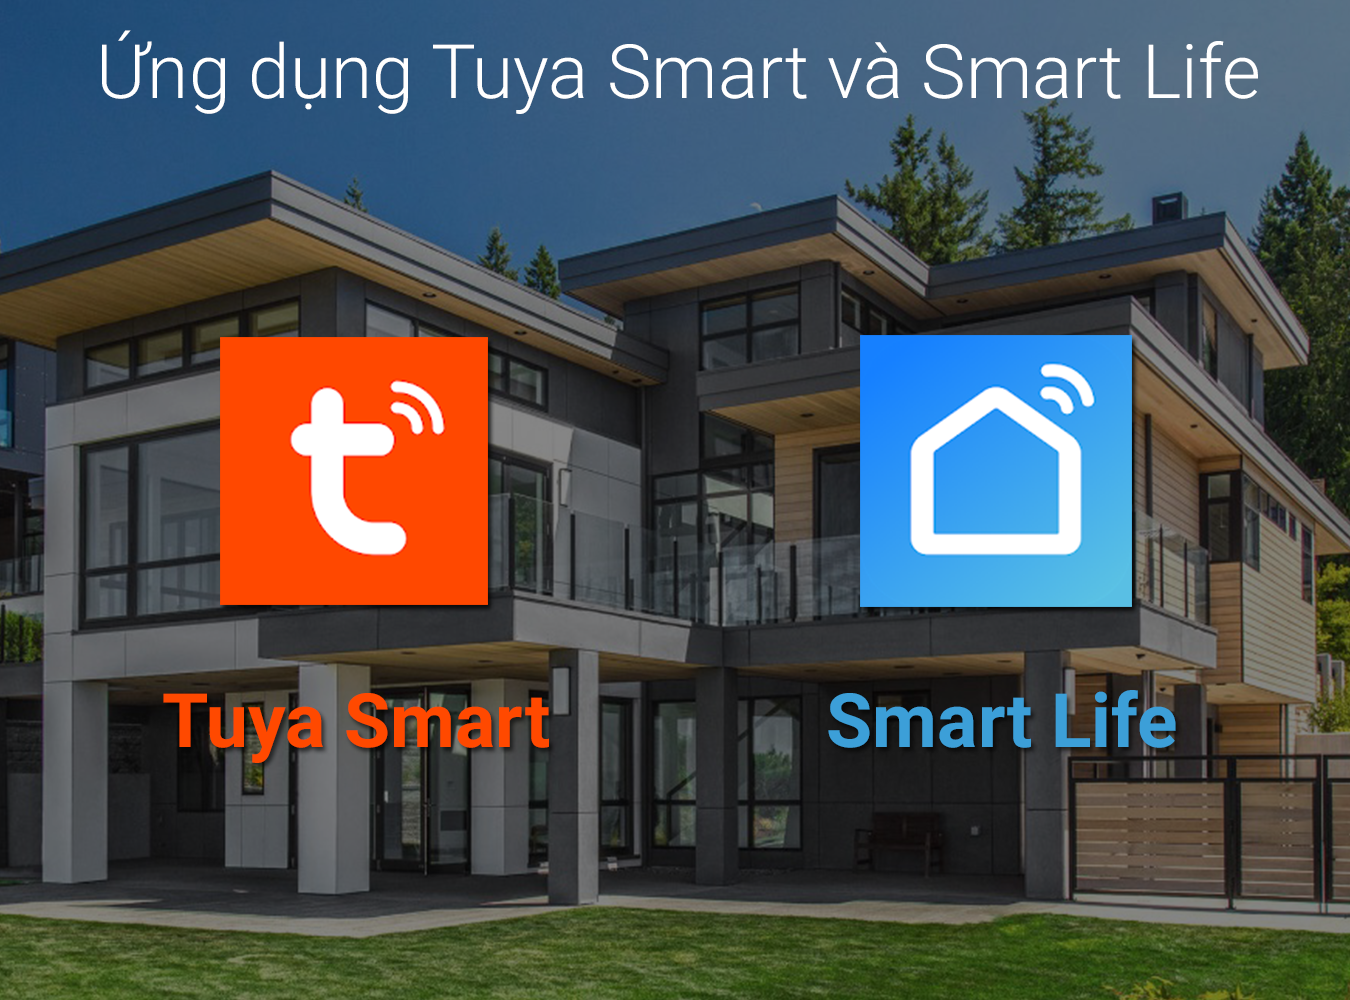 Ứng dụng Tuya Smart và Smart Life có gì khác nhau và giống nhau?